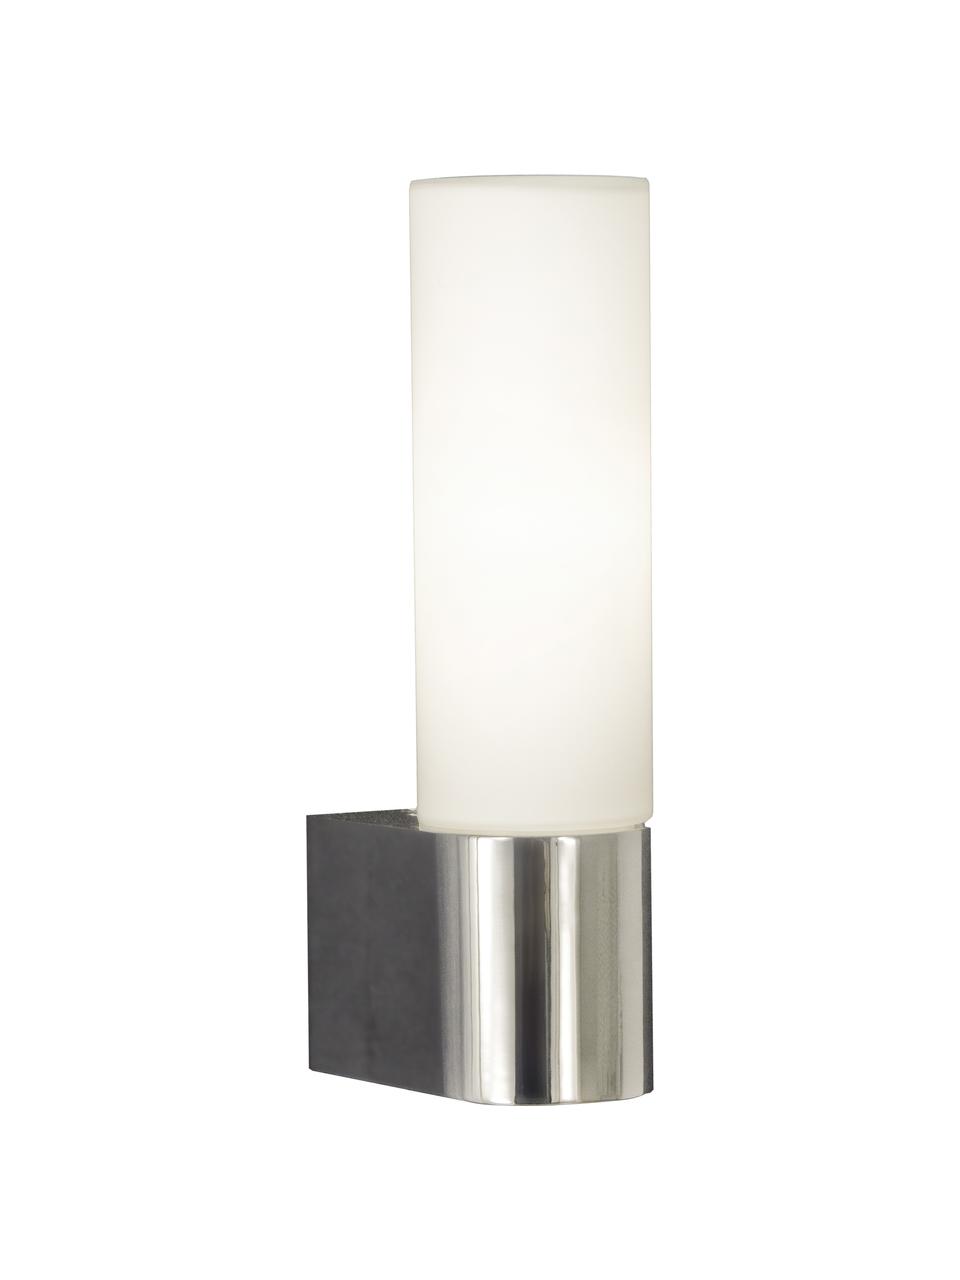 Koupelnové nástěnné svítidlo s integrovanou zásuvkou Cosenza, Stříbrná, bílá, Š 6 cm, H 10 cm